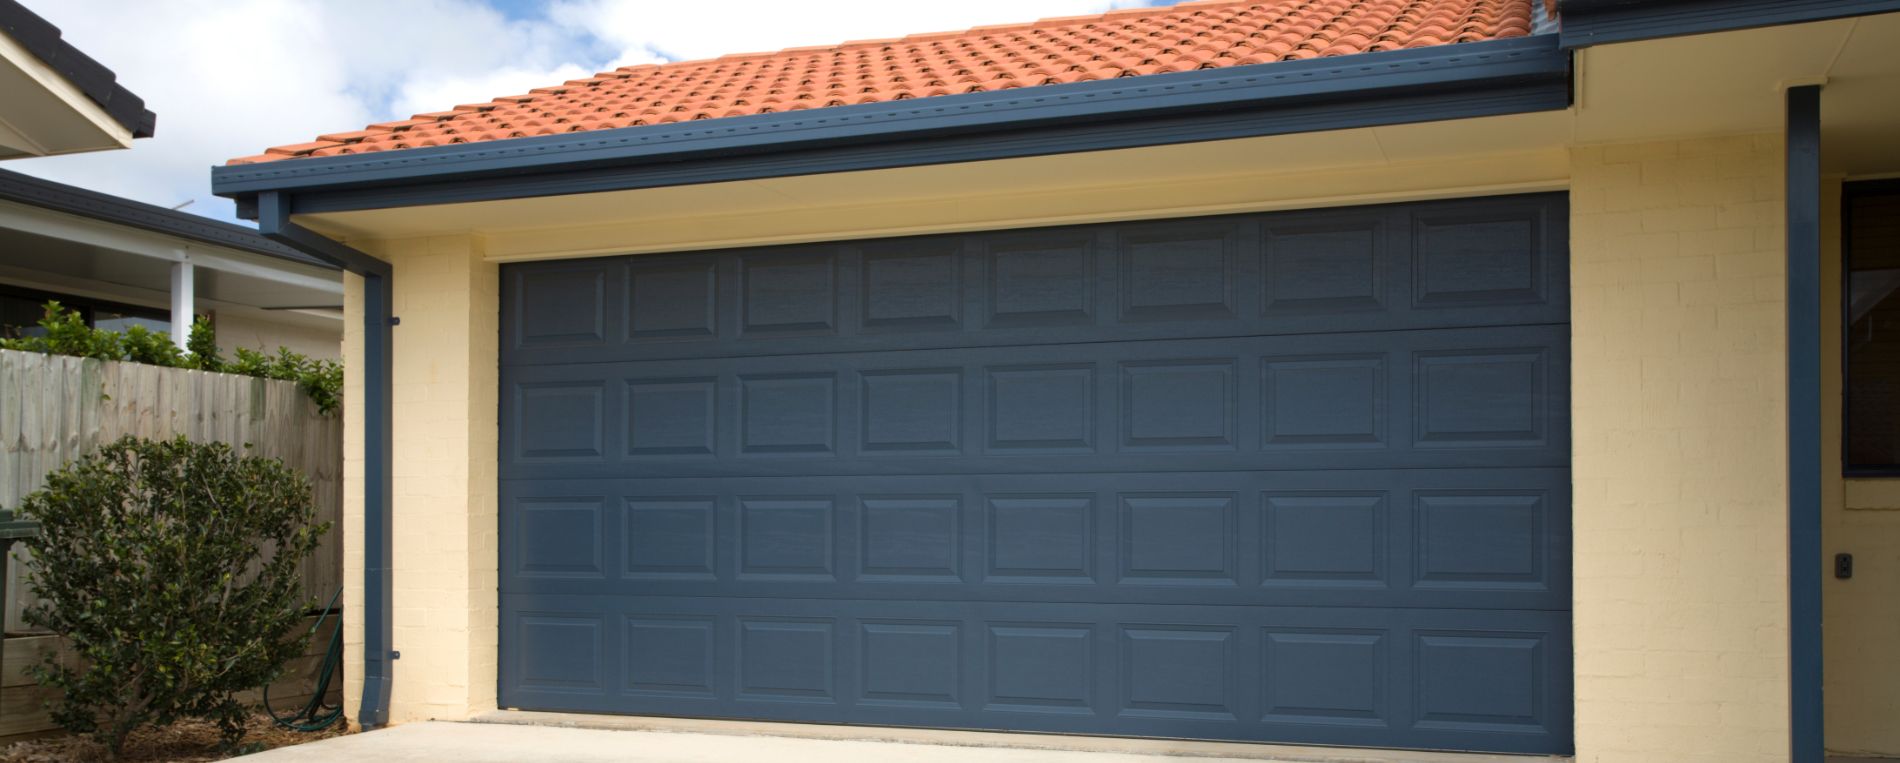 Residential blue garage door